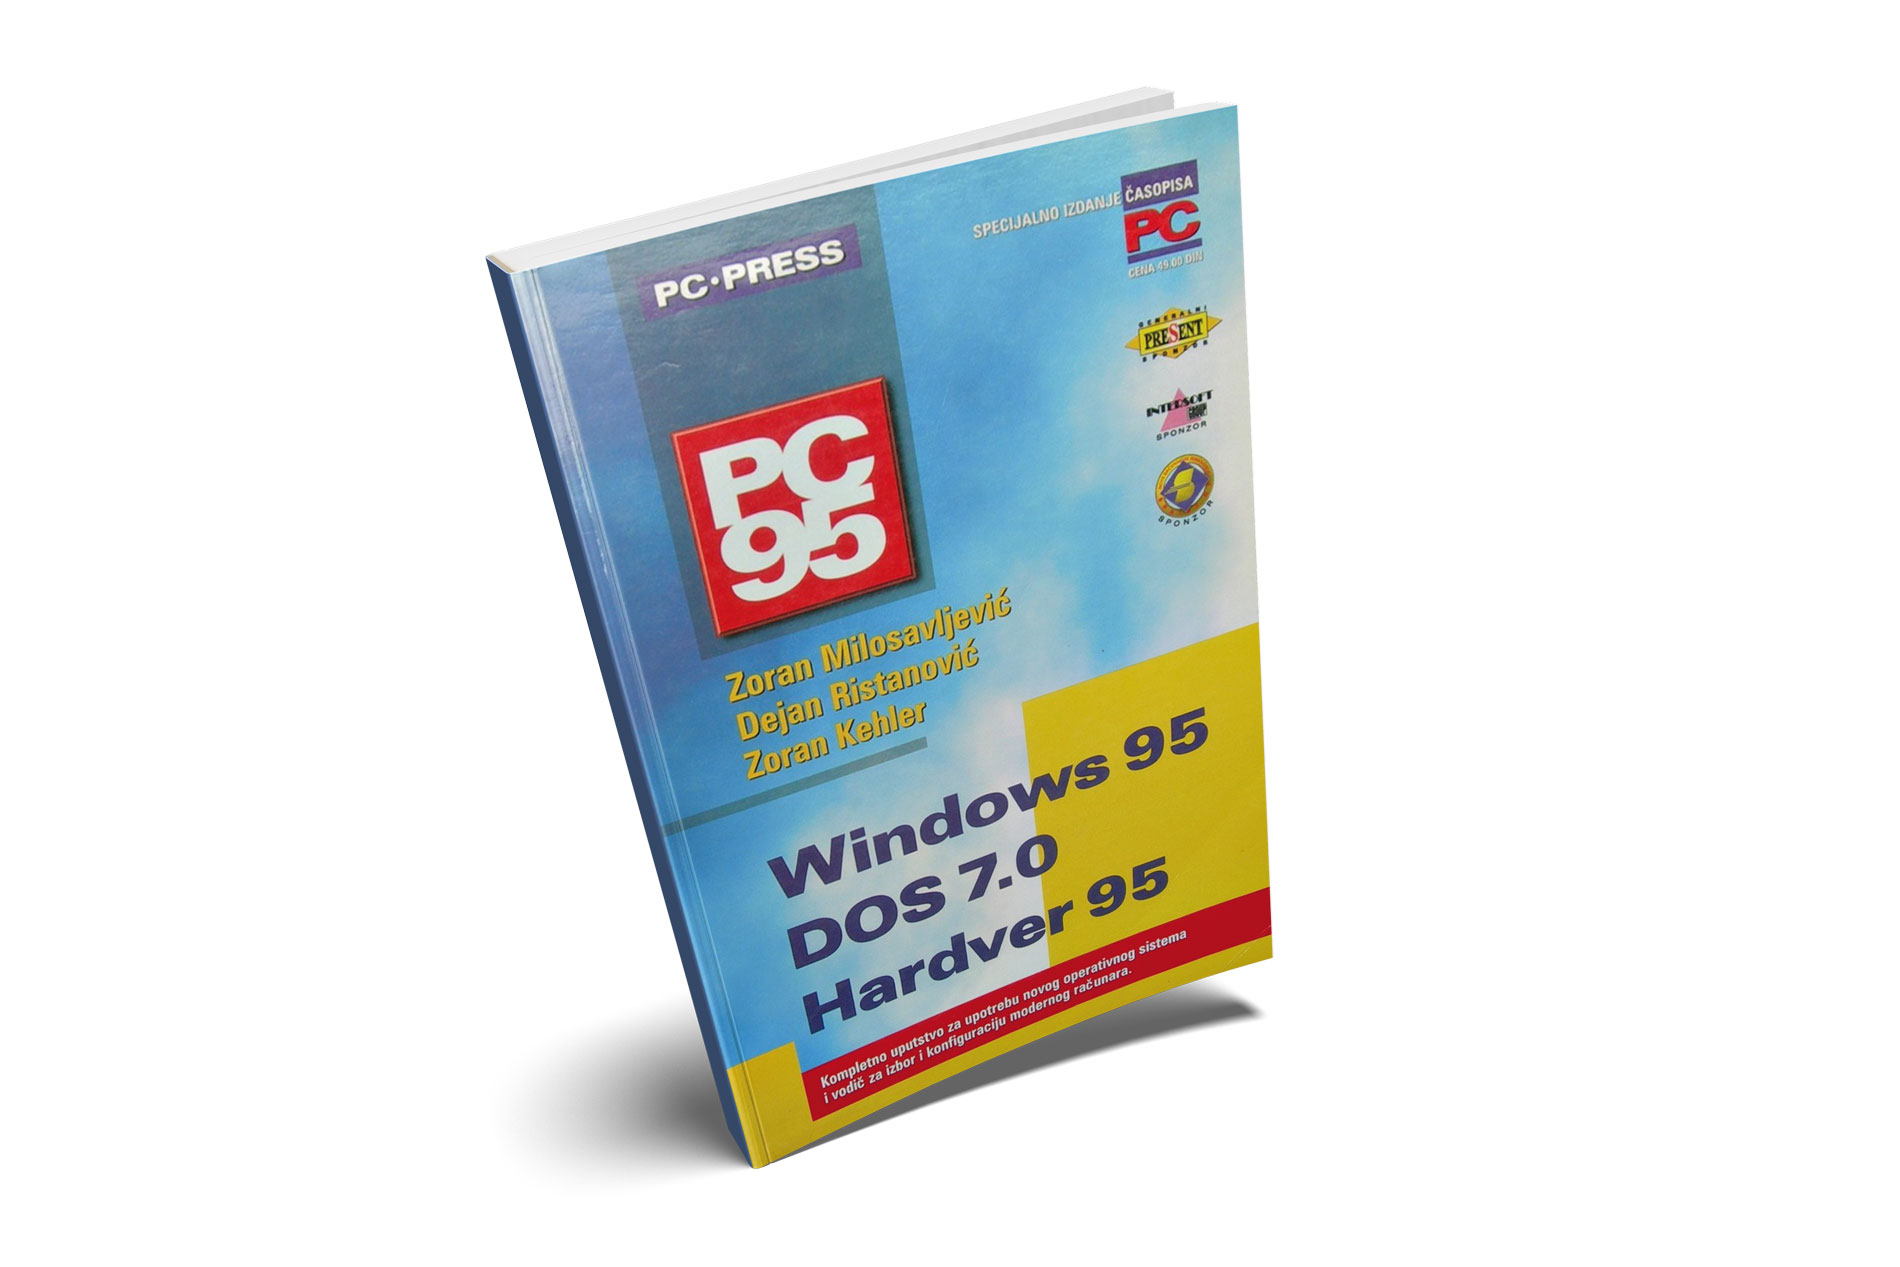 PC 95 - izdanje PC Press-a iz 1995. godine